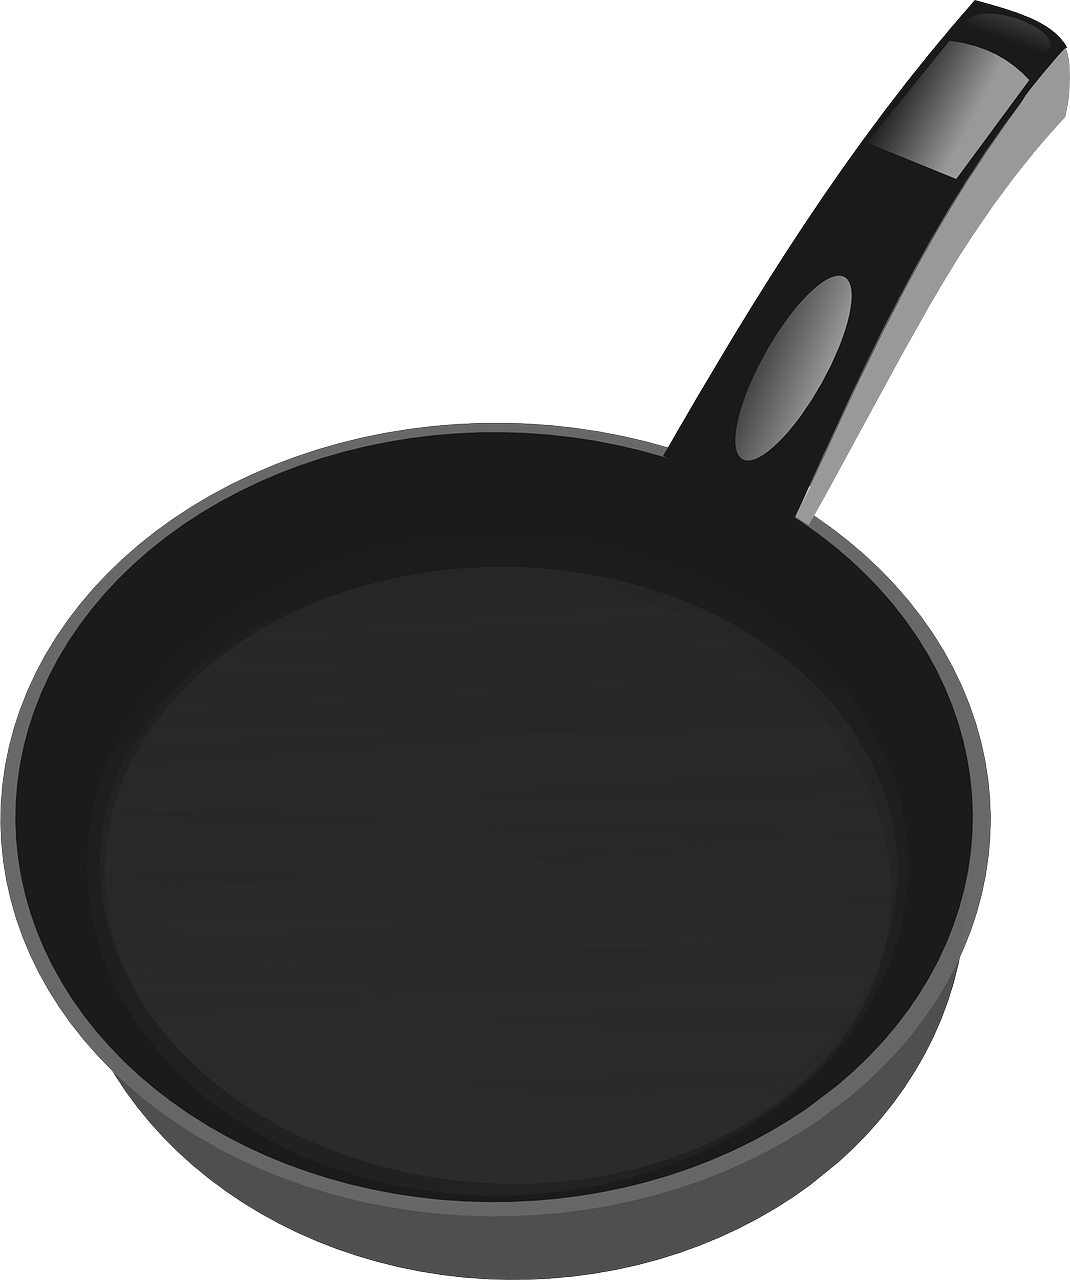 frying pan tool free photo